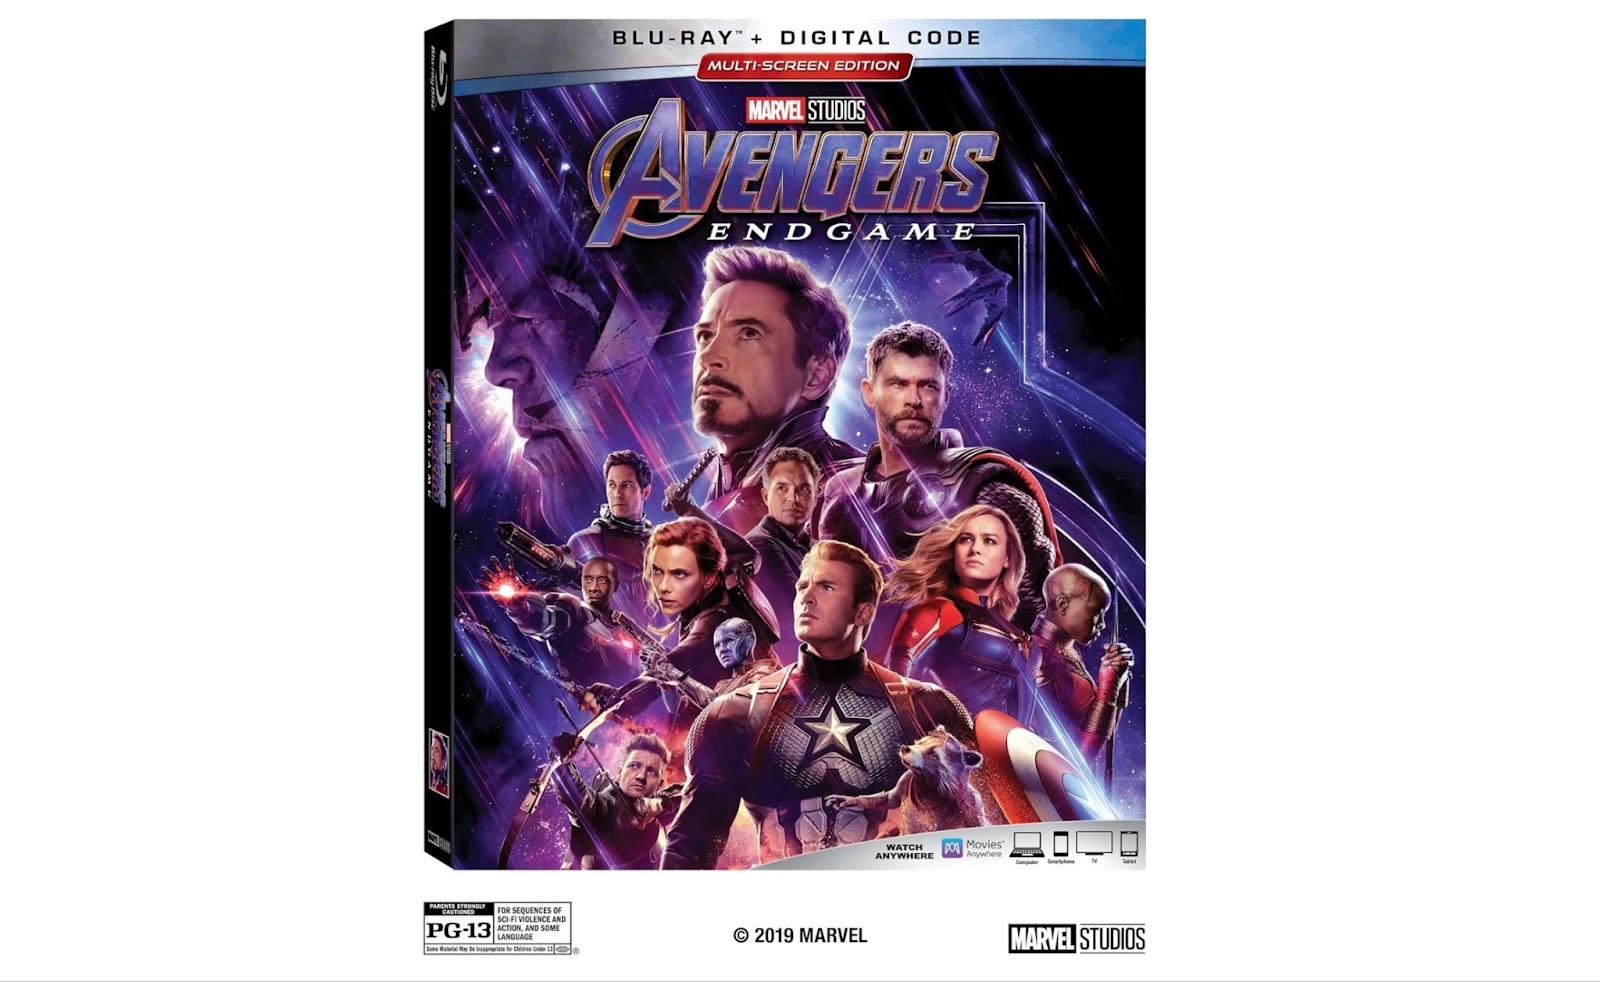 Avengers: Endgame movie cover on white background